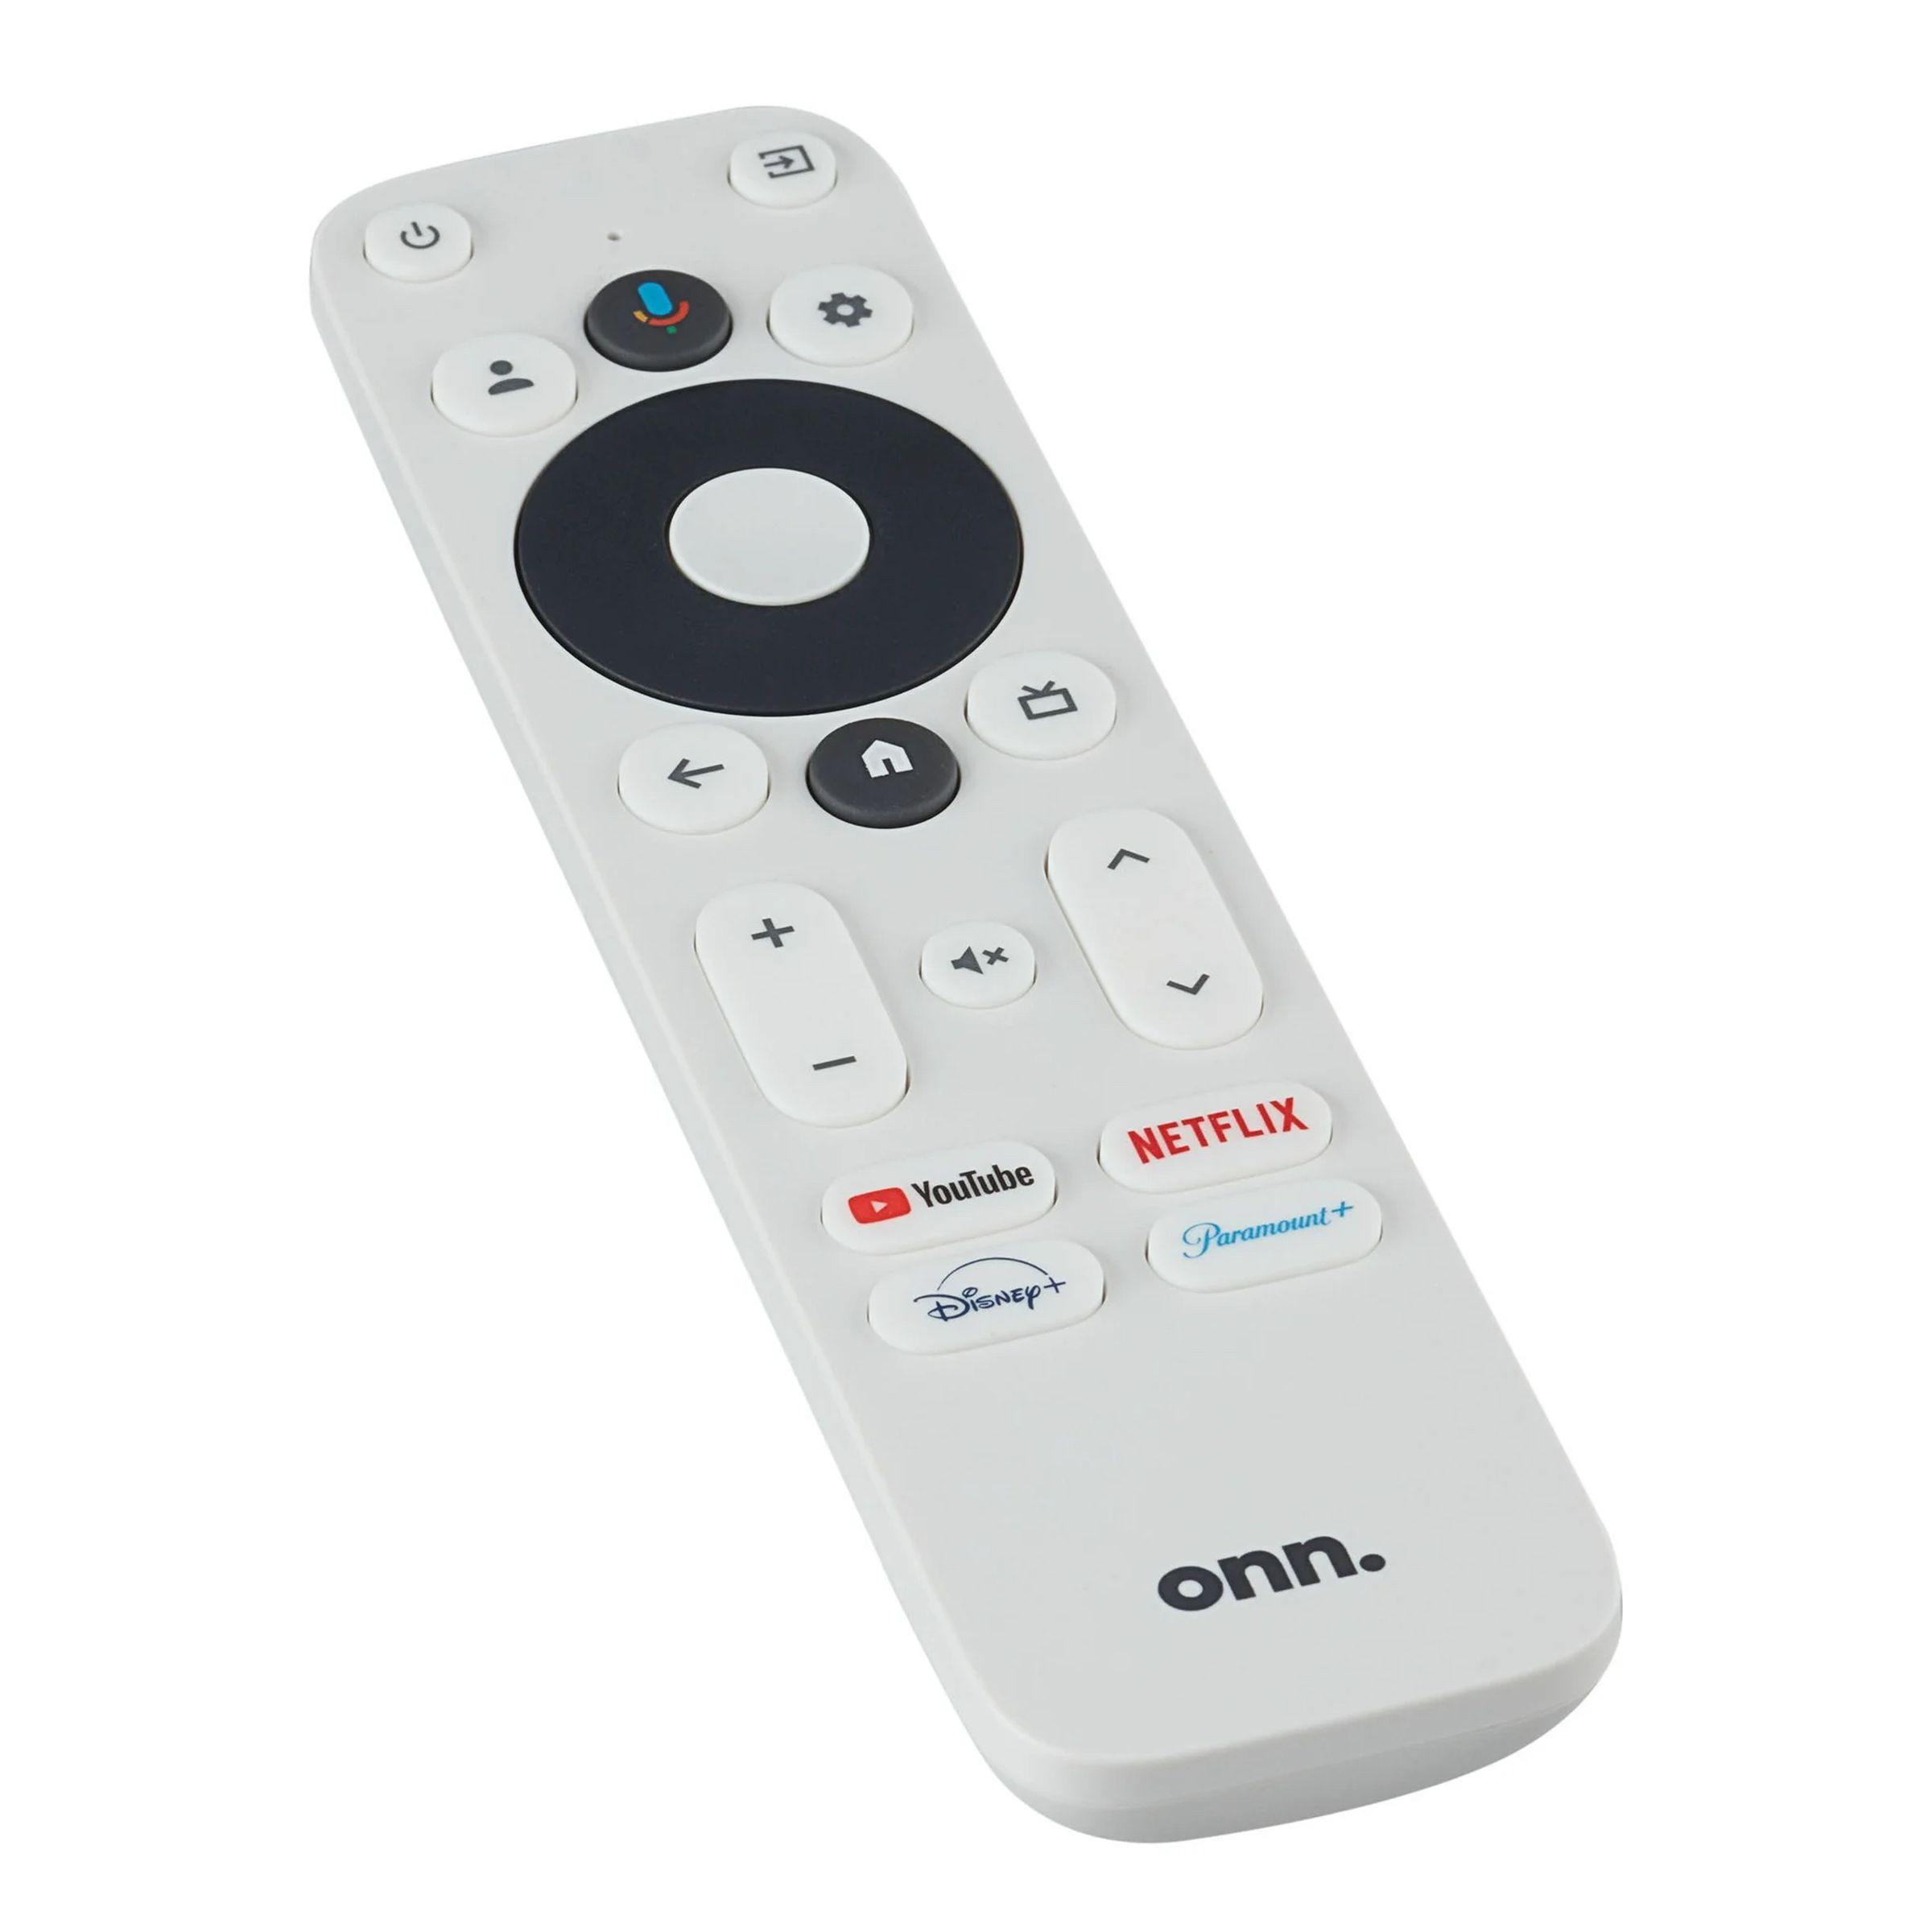 <em>The Onn remote.</em>